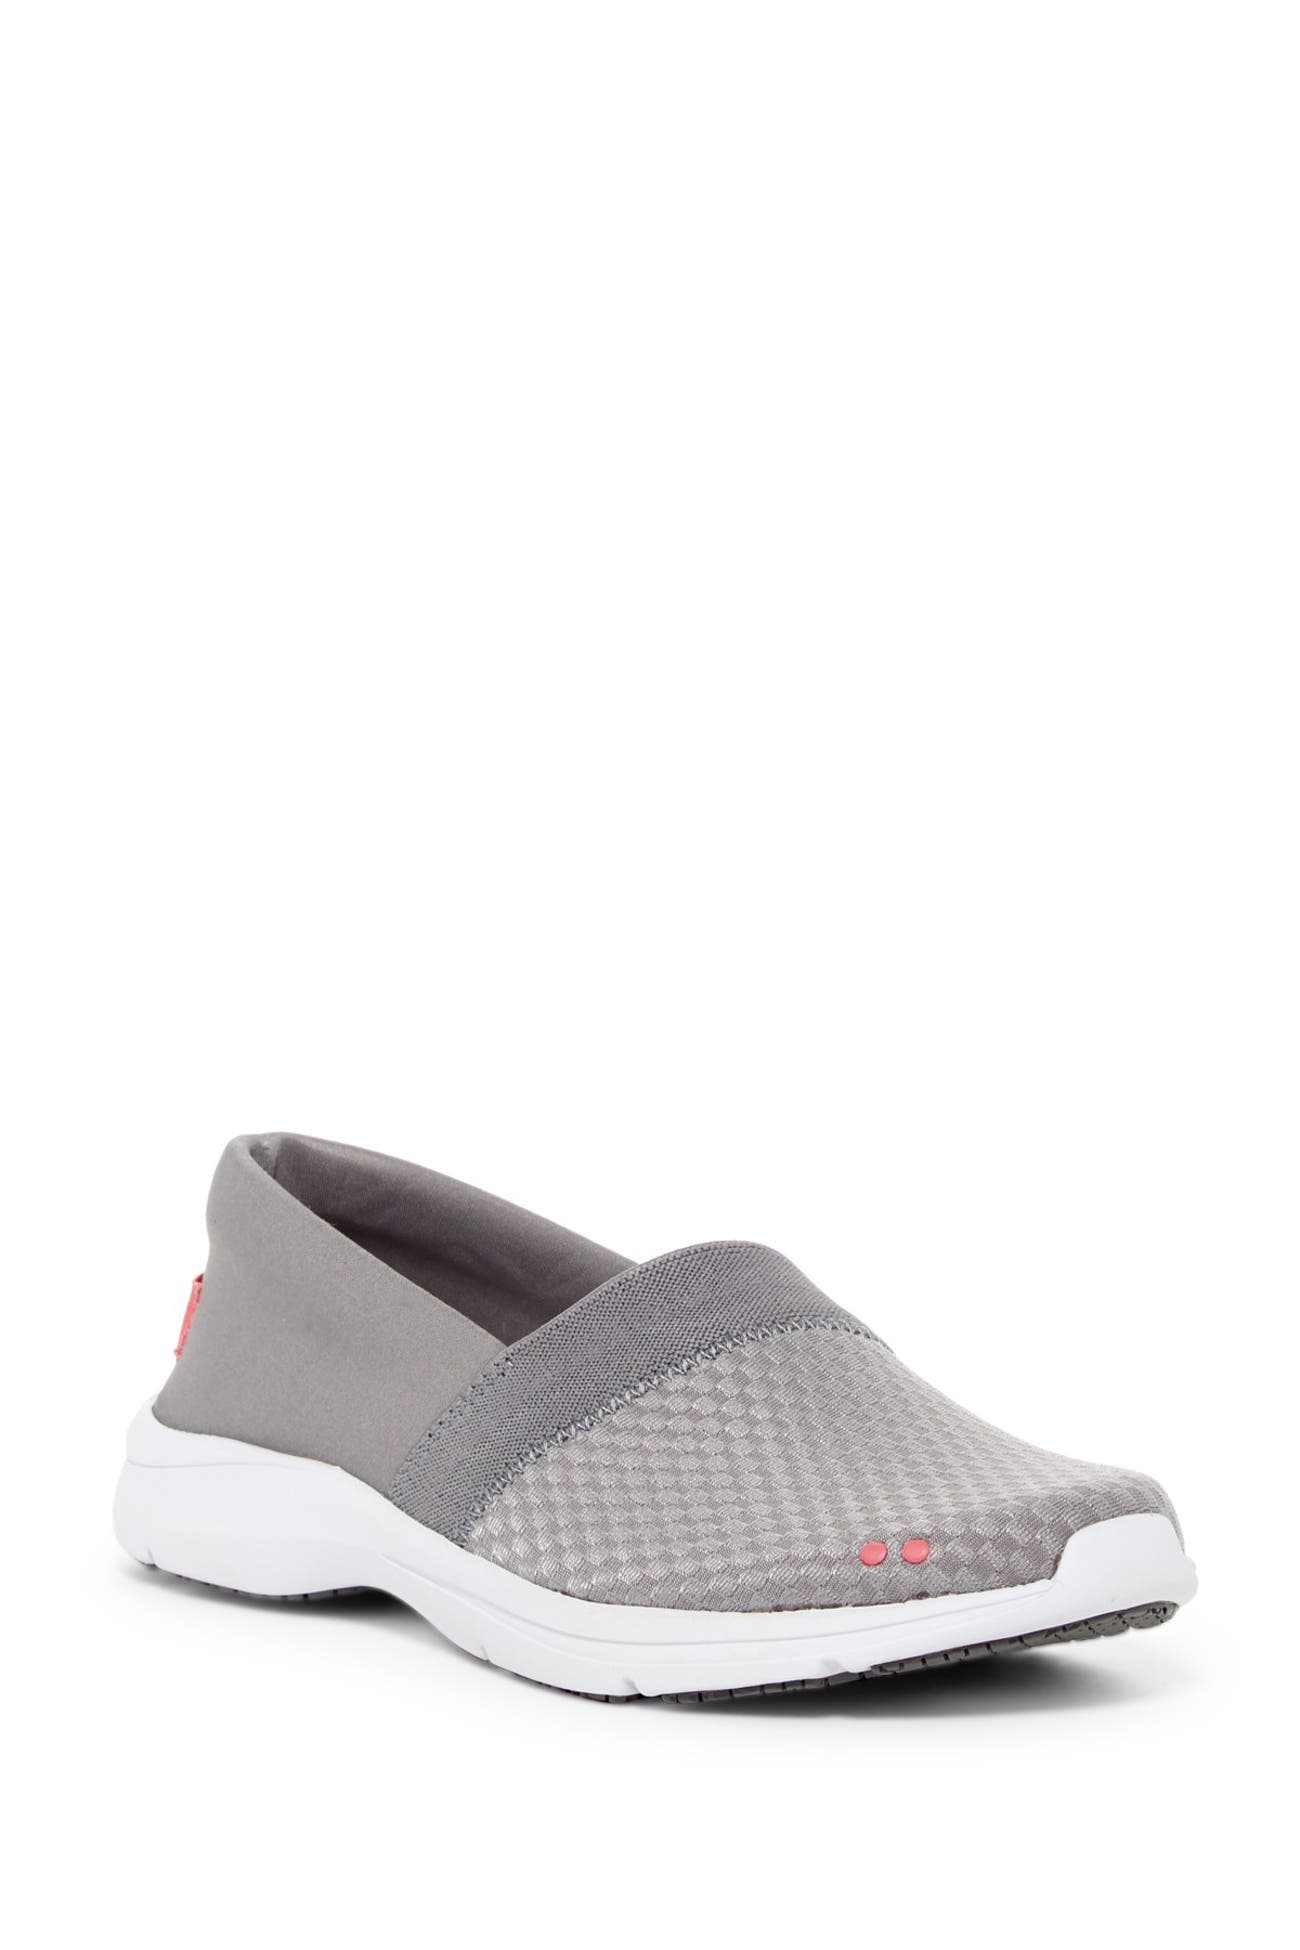 Ryka | Seashore Slip-Resistant Slip-On Sneaker - Wide Width Available ...